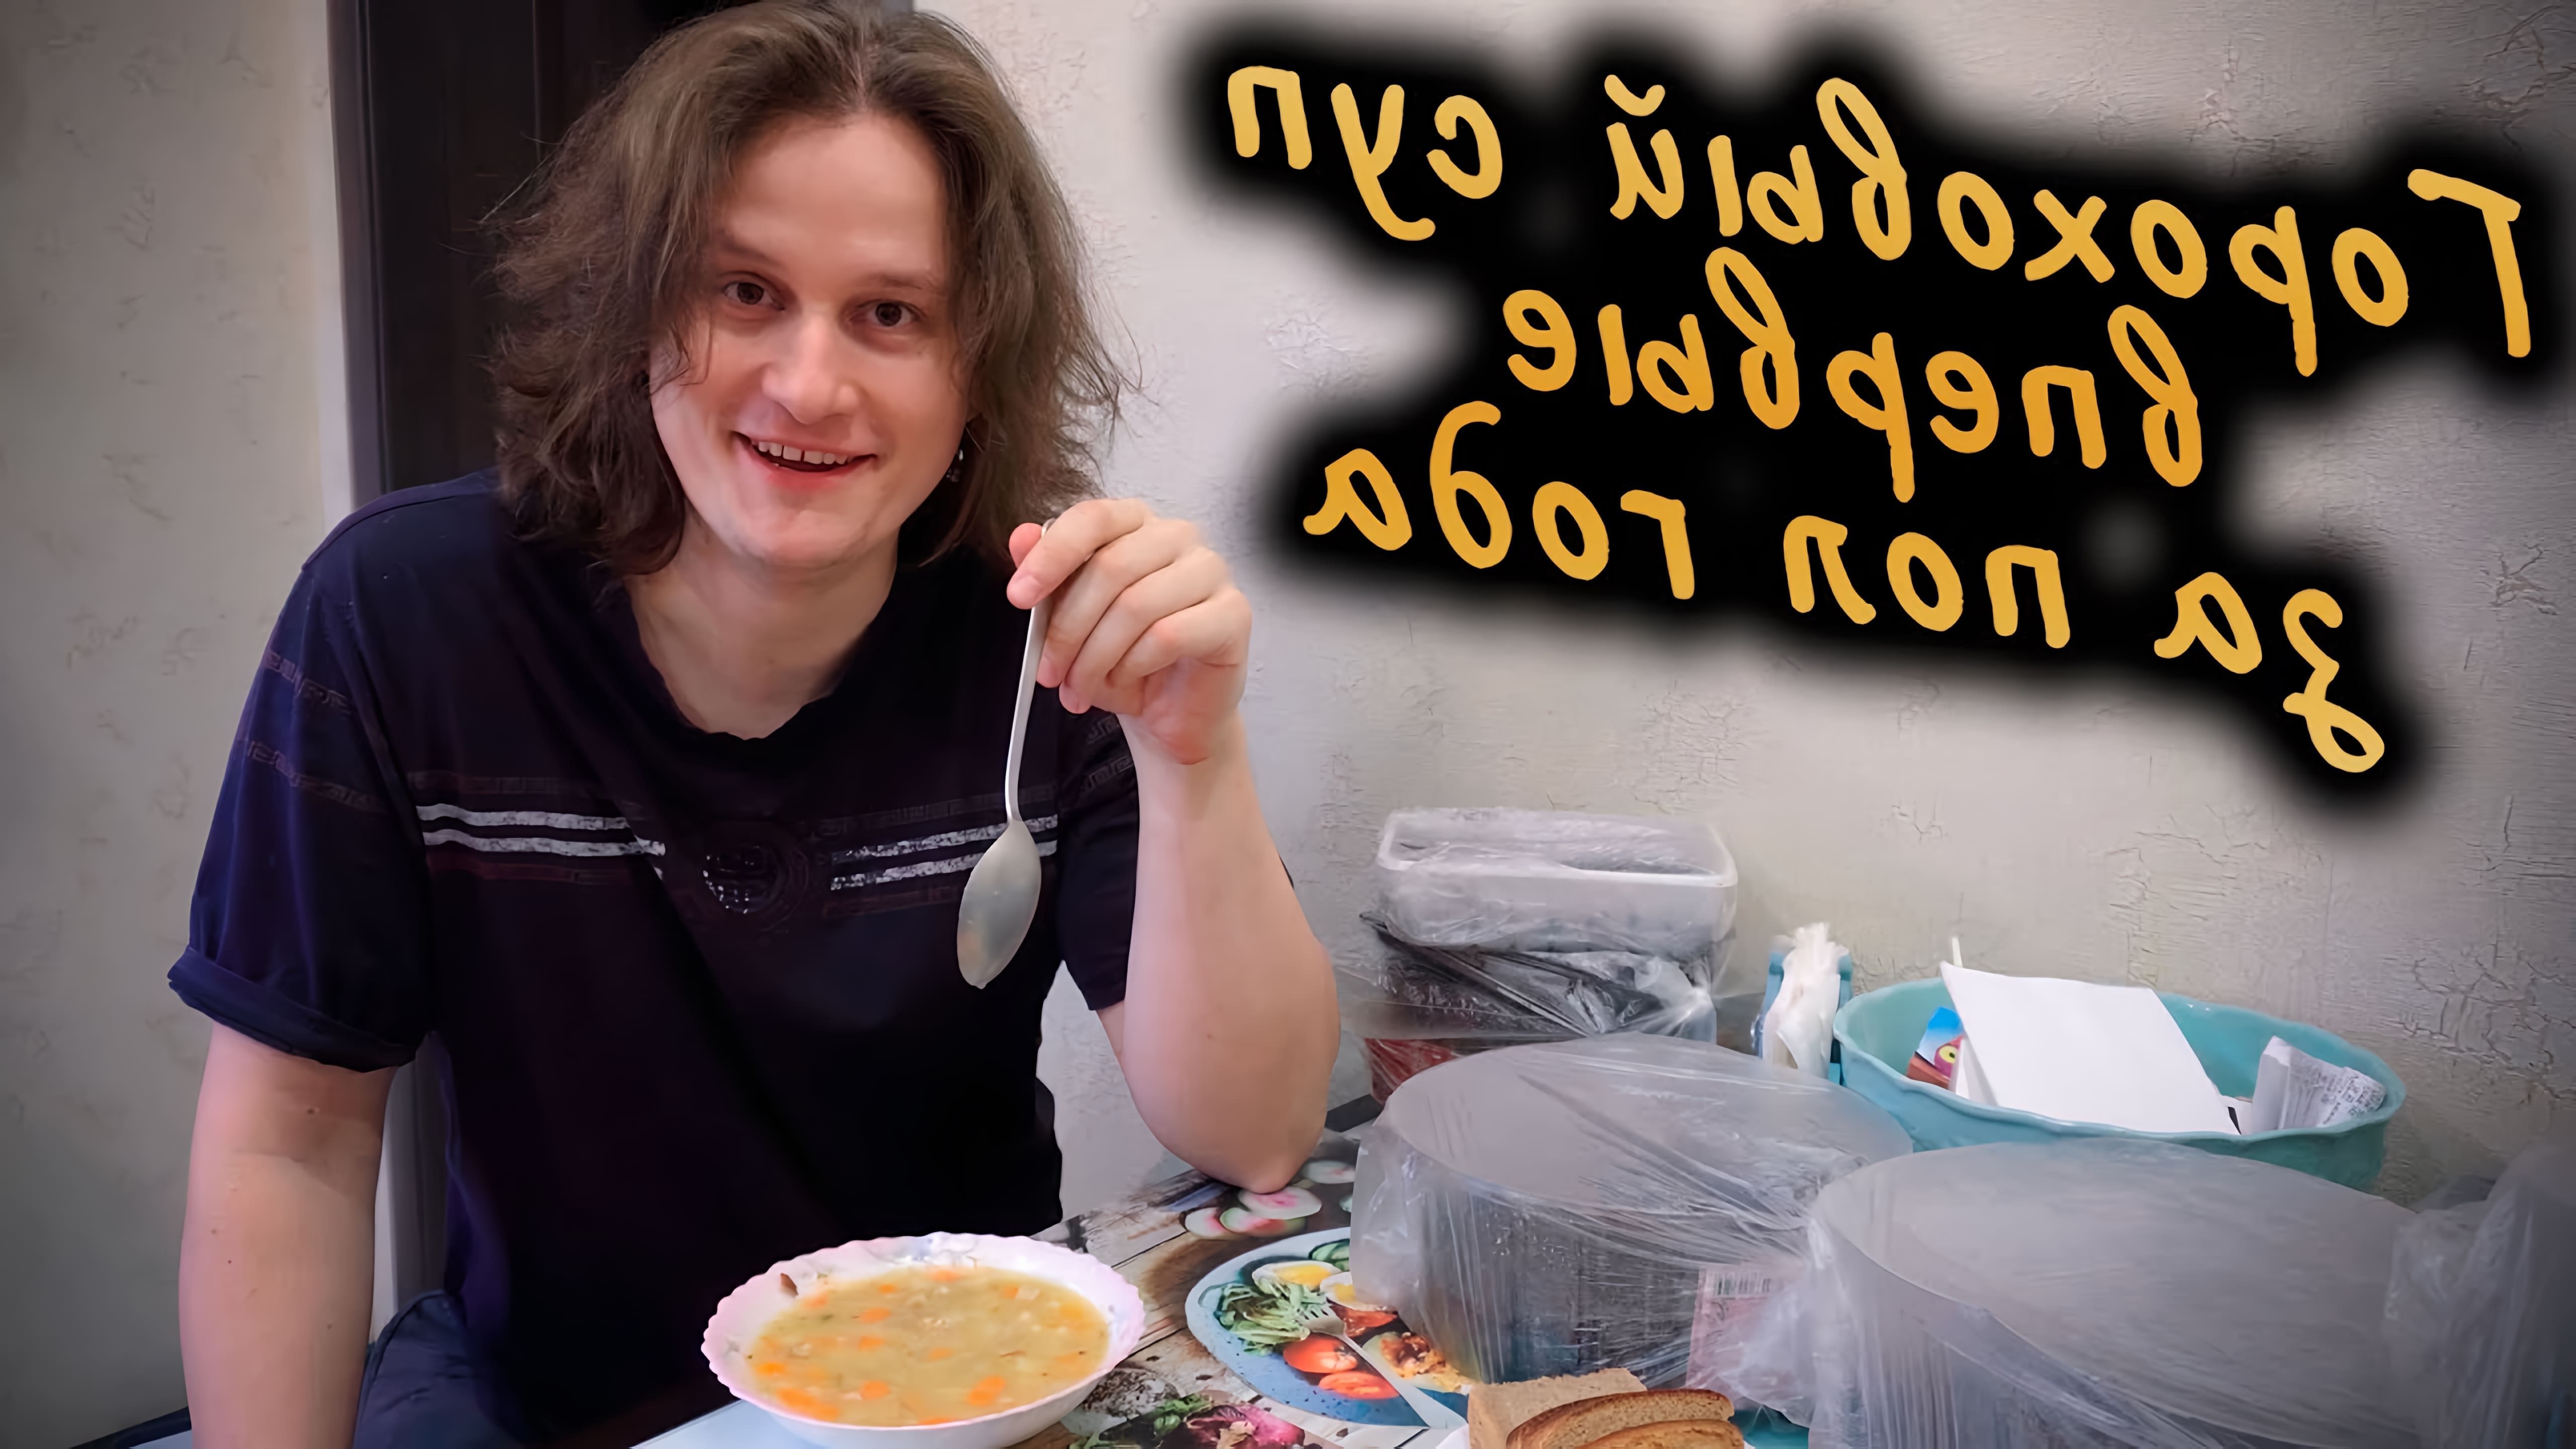 В данном видео демонстрируется процесс приготовления двух блюд: горохового супа с копченостями и риса с арахисом